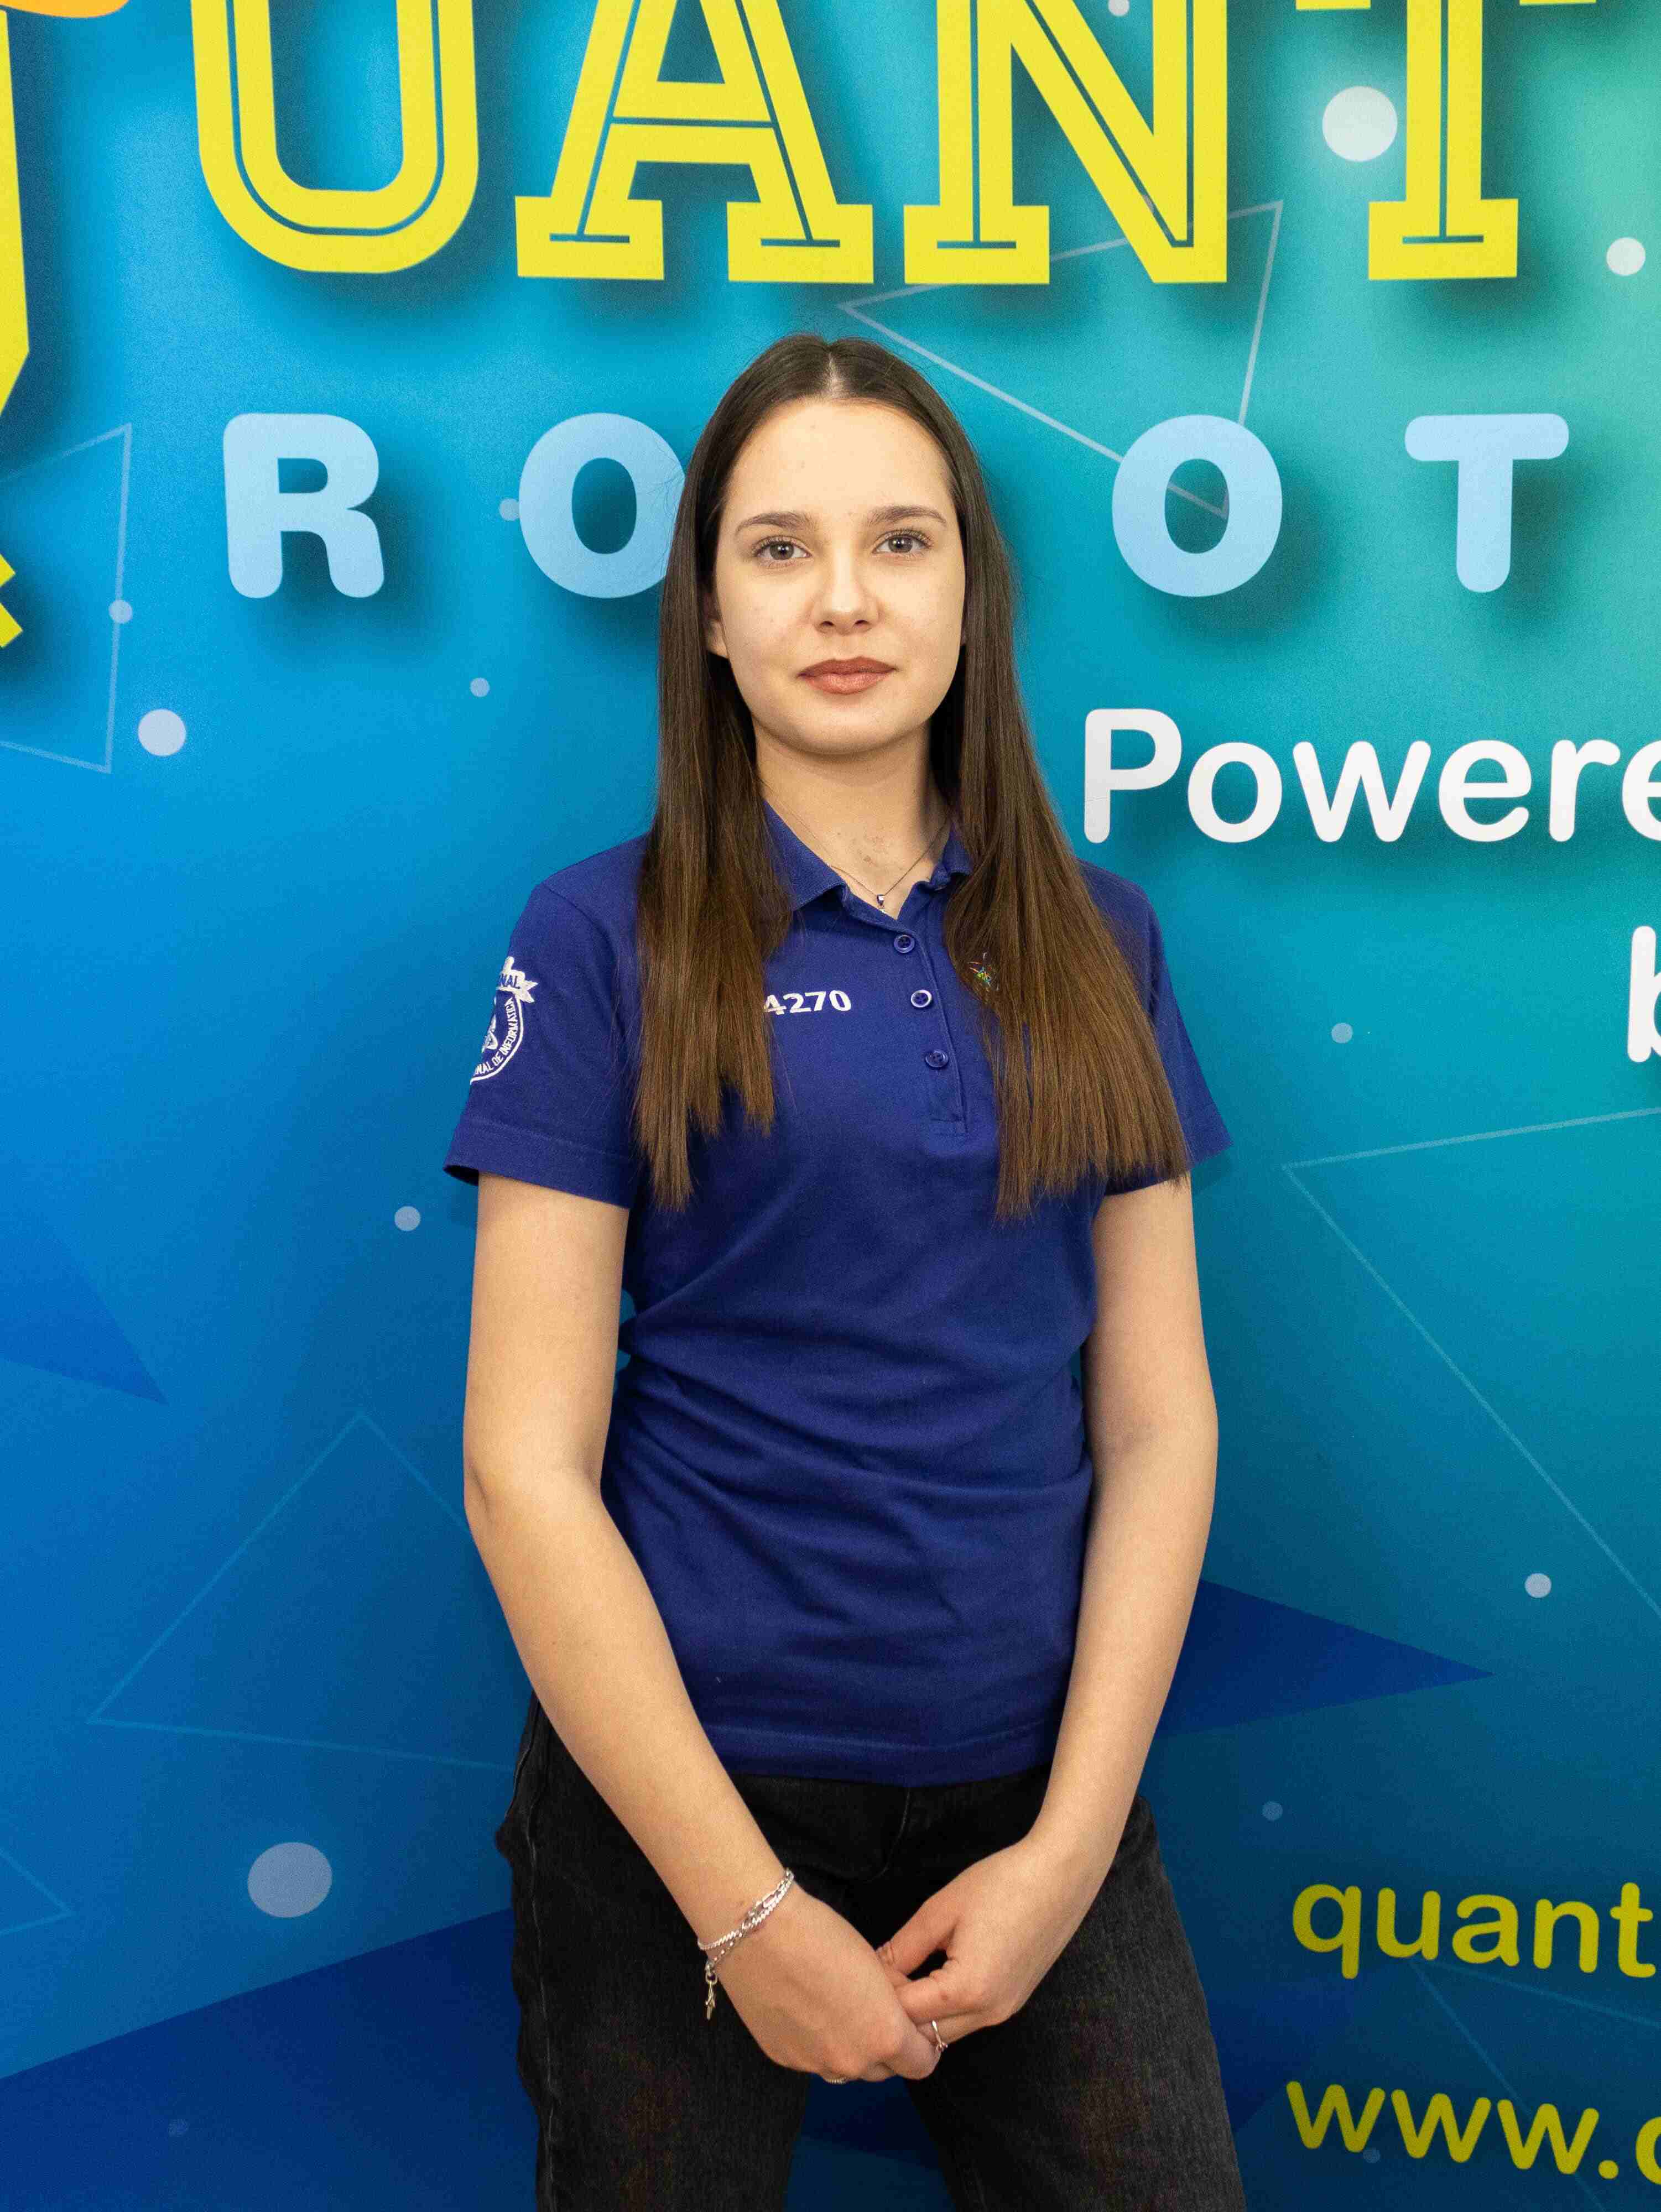 Quantum-Robotics-FTC-FIRST-competiton-team-members-Alice-Constantinescu